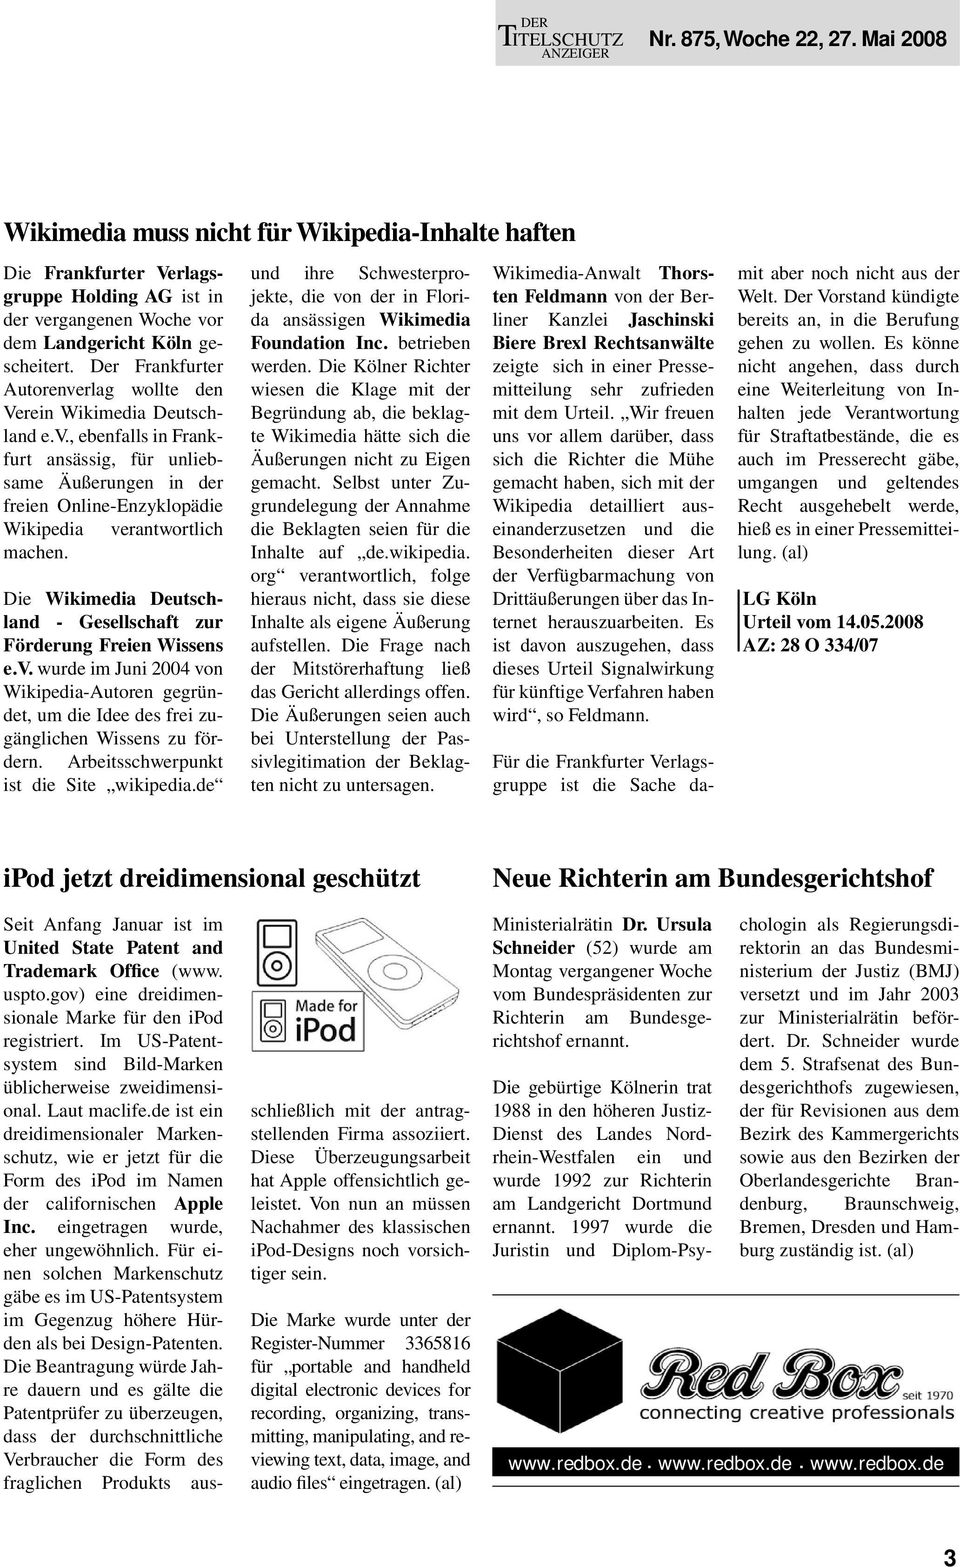 Die Wikimedia Deutschland - Gesellschaft zur Förderung Freien Wissens e.v. wurde im Juni 2004 von Wikipedia-Autoren gegründet, um die Idee des frei zugänglichen Wissens zu fördern.